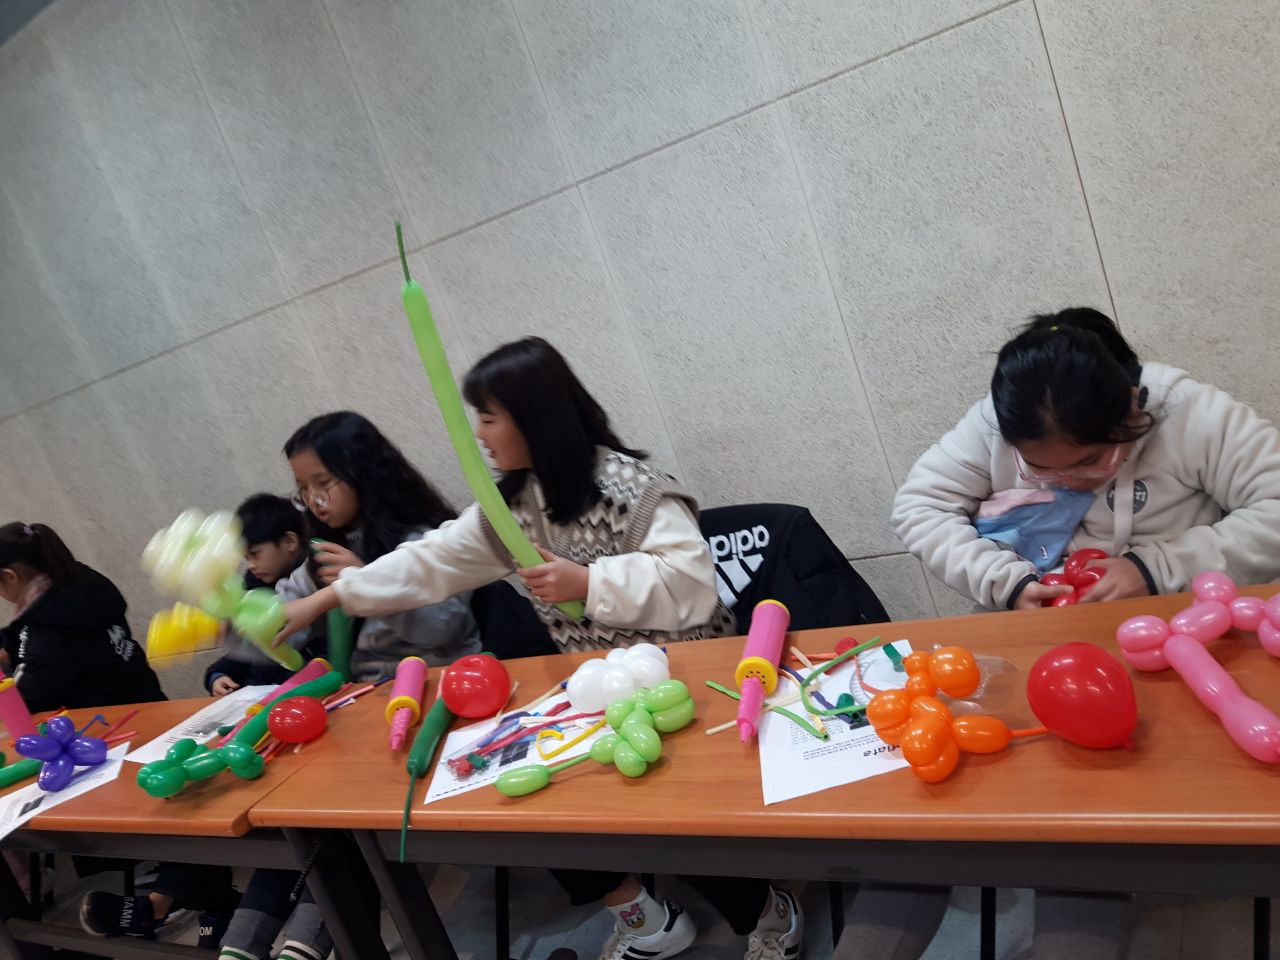 중곡3동 자치회관 겨울방학 권역별 특화프로그램 어린이와 함께하는 풍선아트 55.jpeg